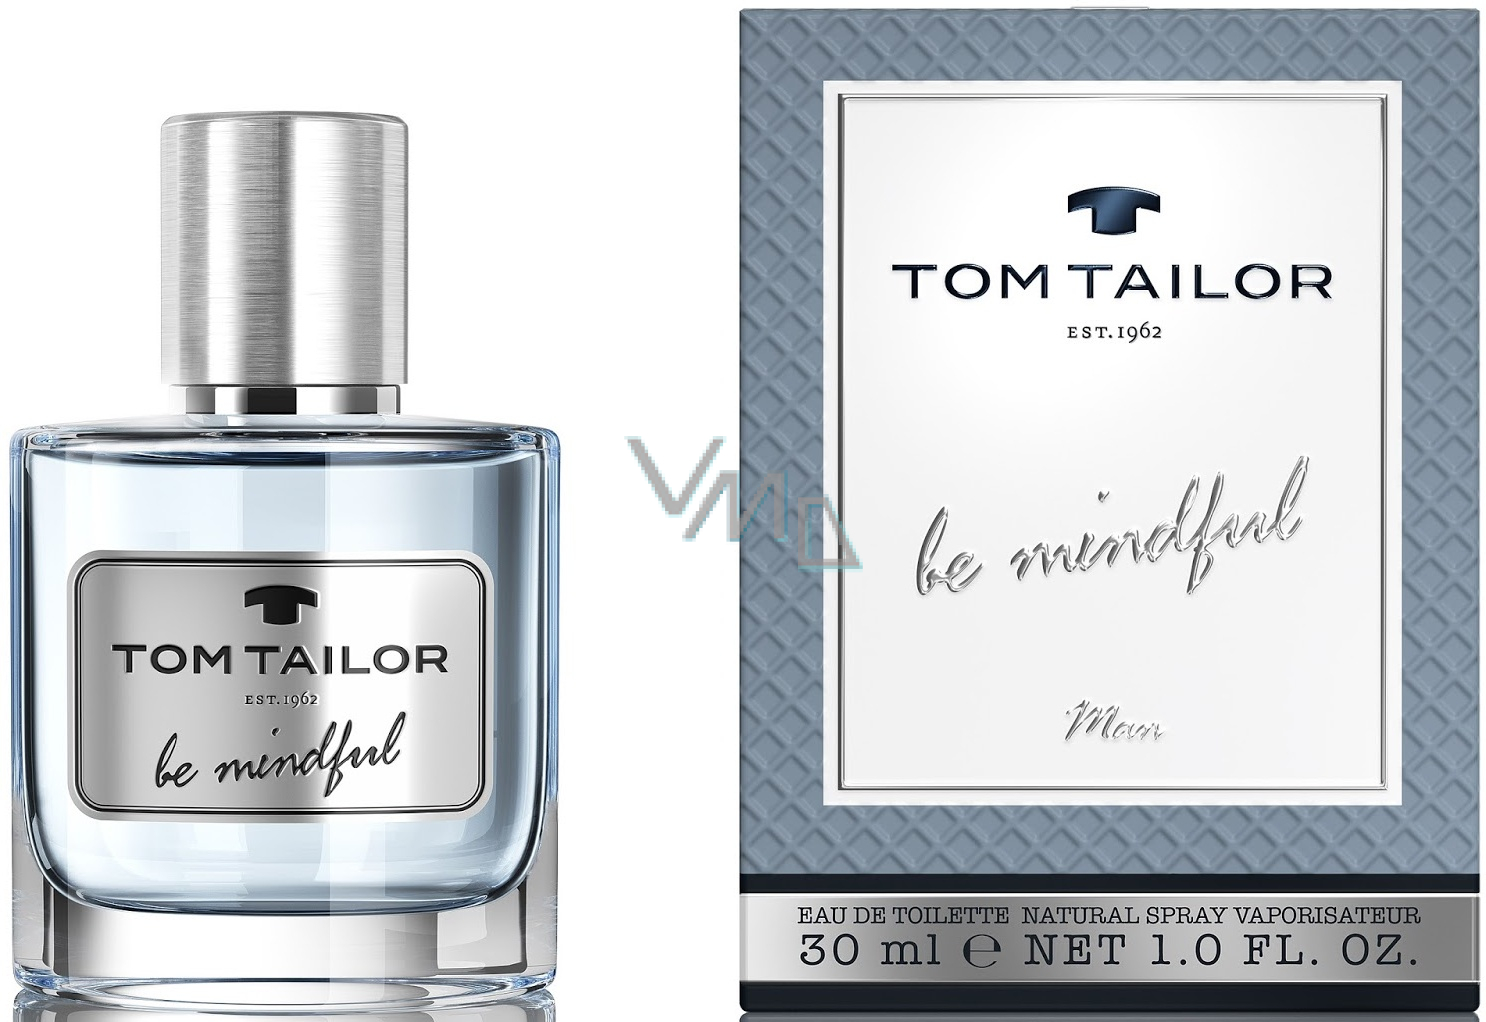 Tom Tailor Be parfumerie Toilette Eau ml drogerie de - - Mindful 30 VMD Man